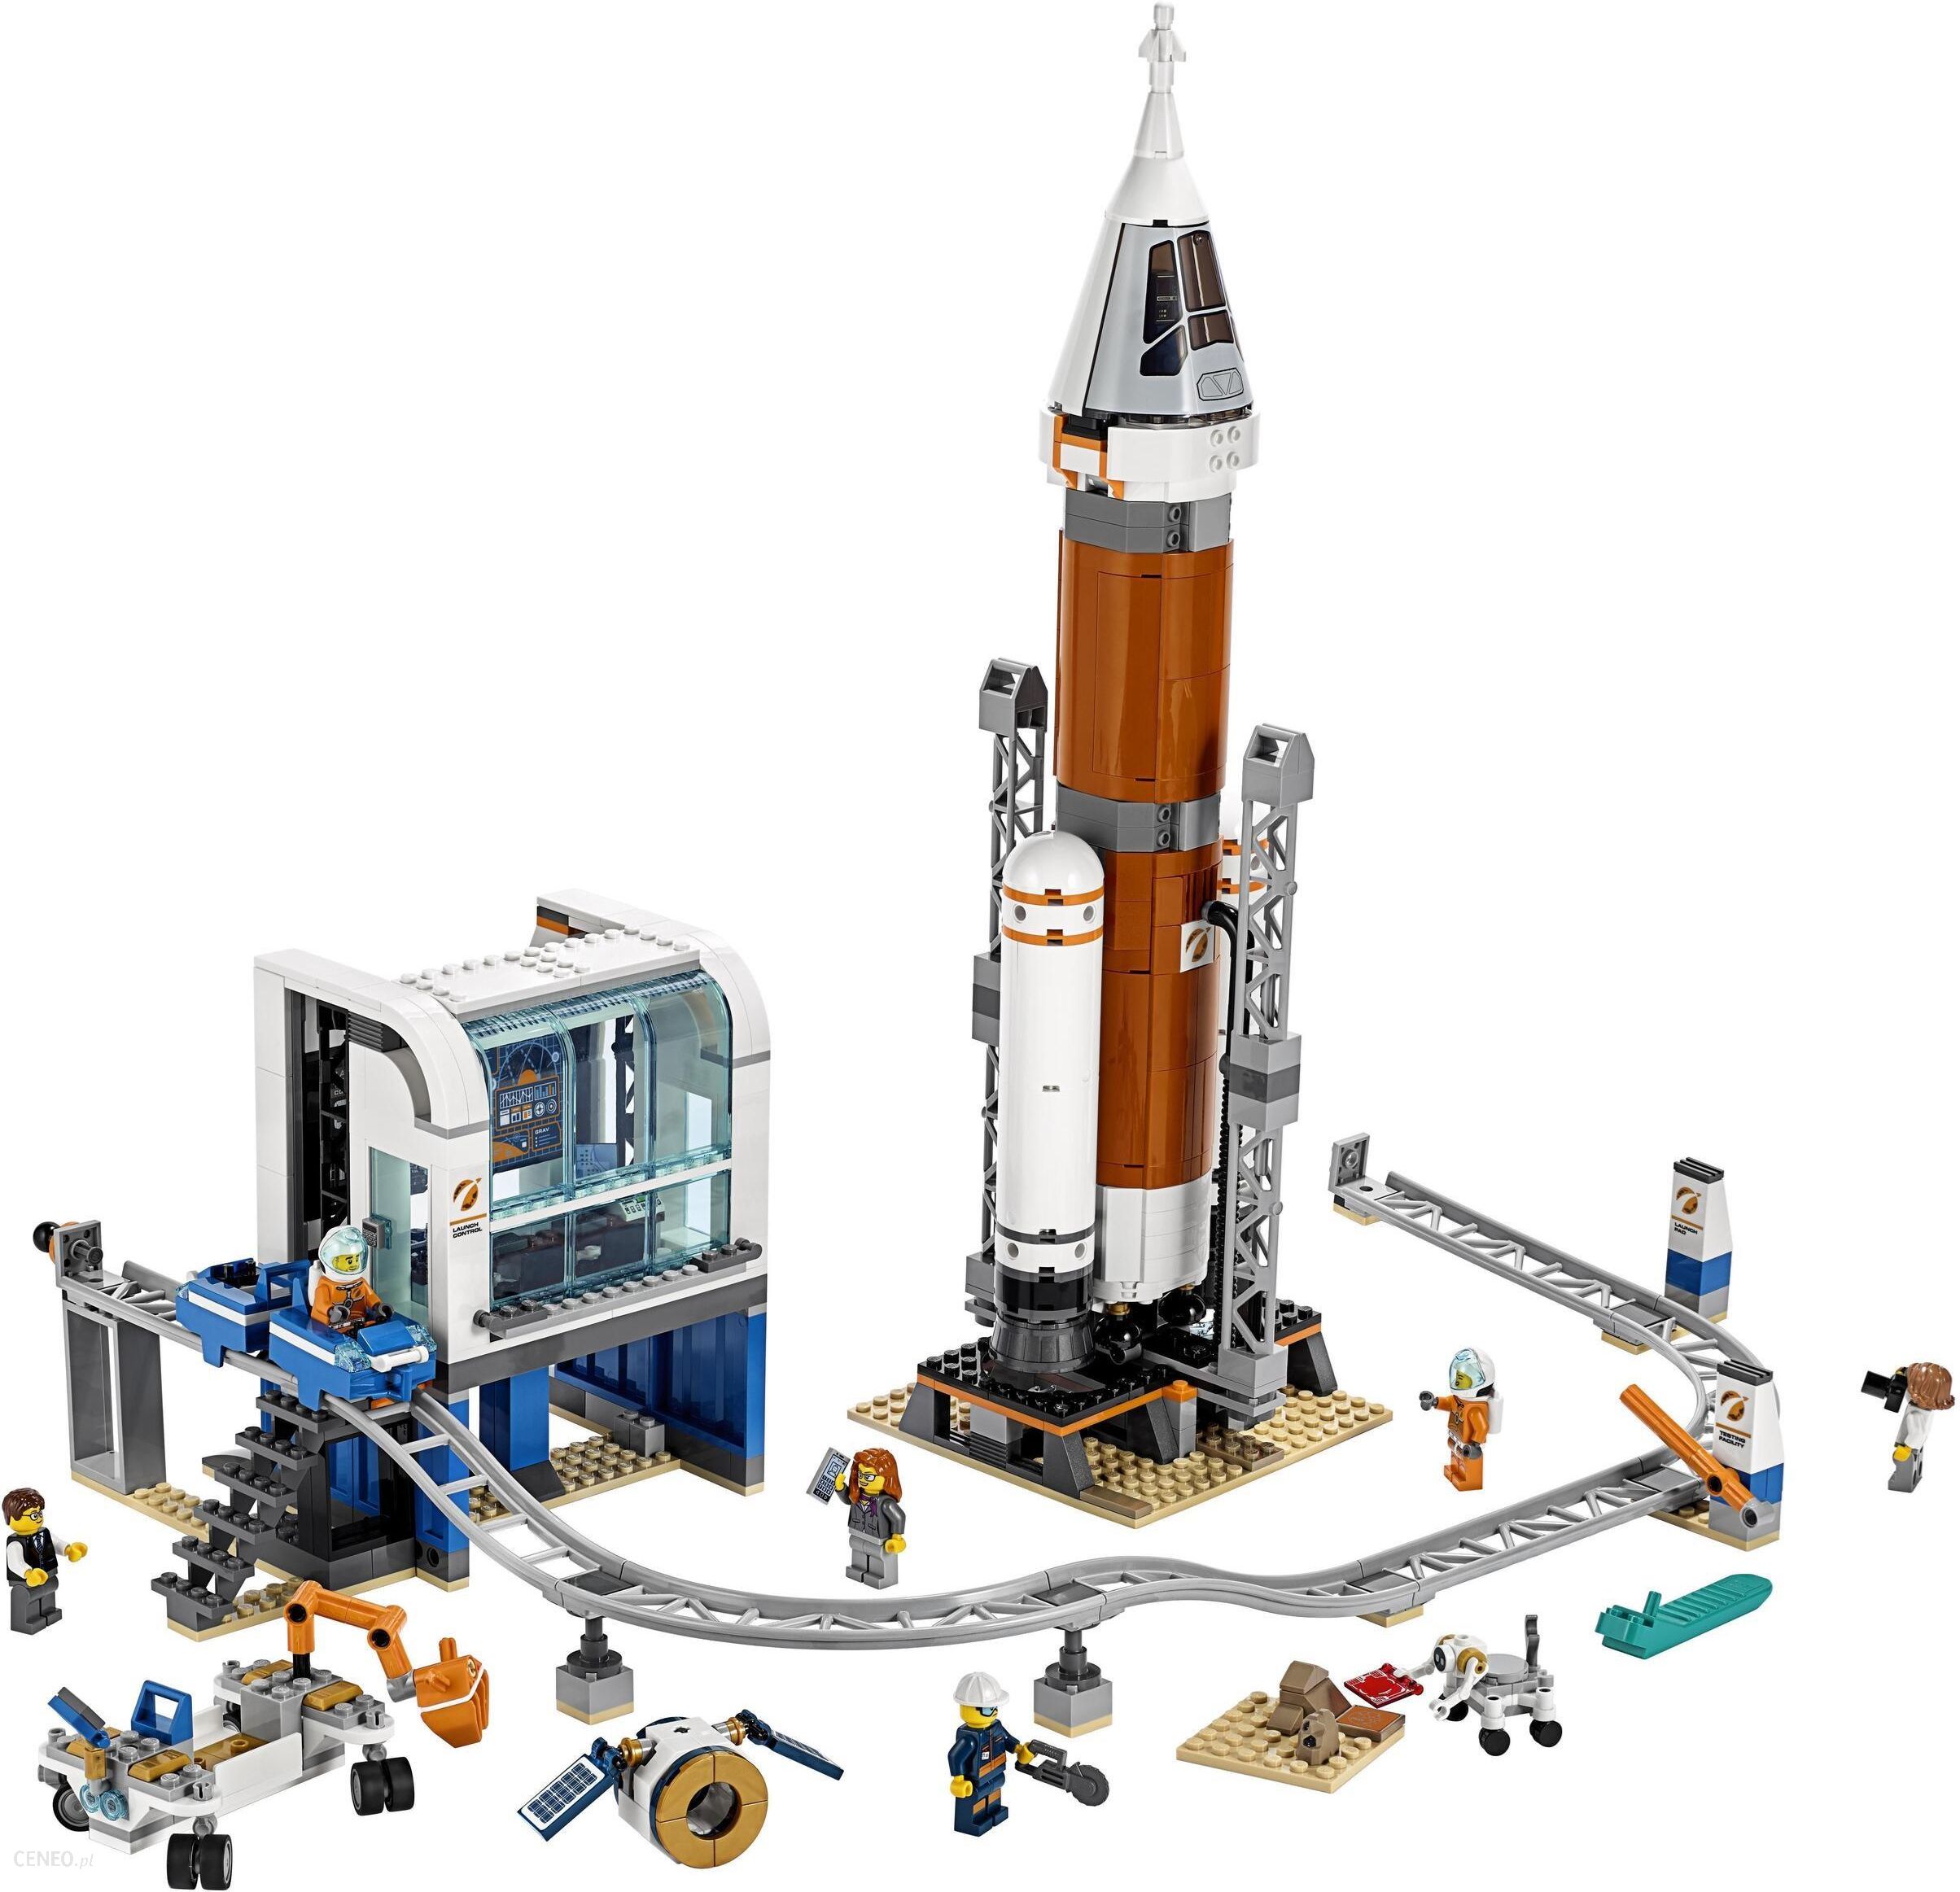 overraskelse frø Depression LEGO City 60228 Centrum lotów kosmicznych NASA - ceny i opinie - Ceneo.pl